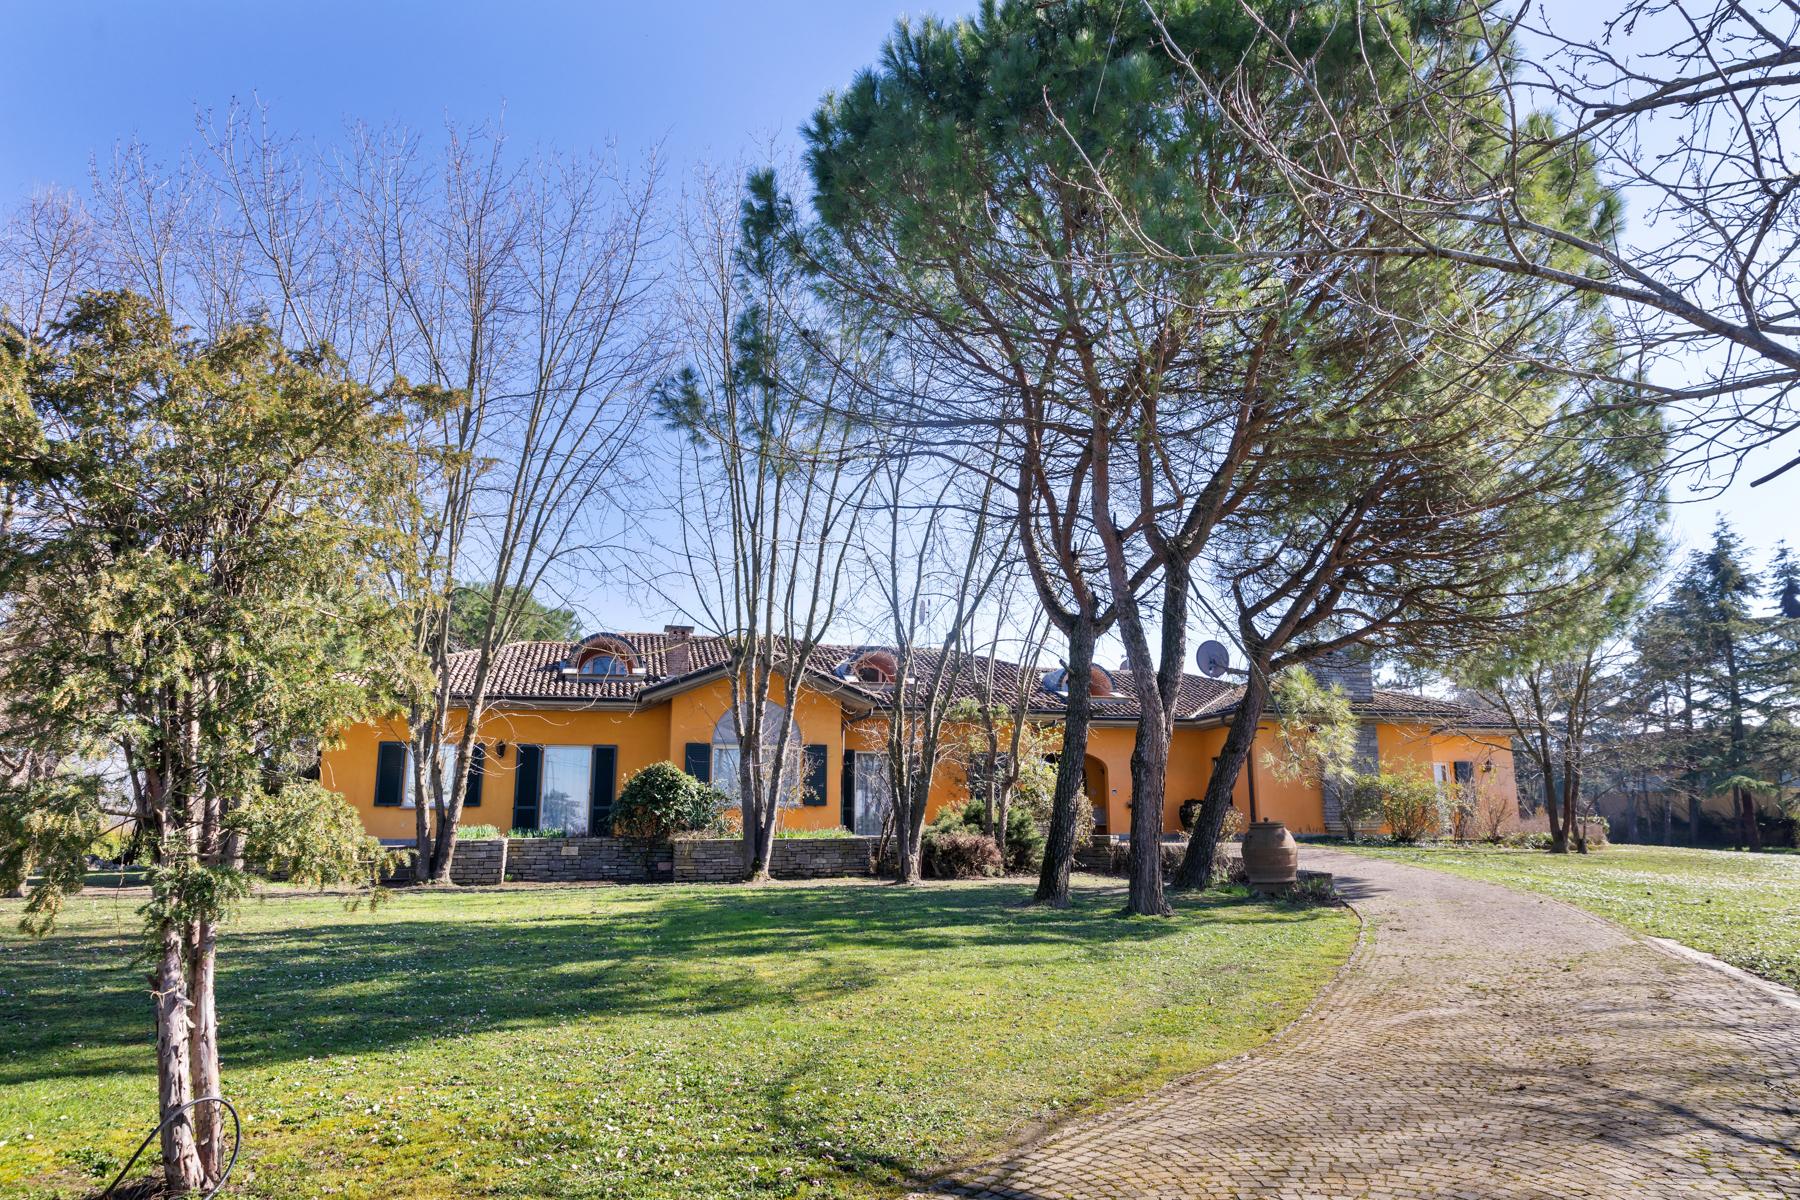 Bella villa moderna con parco e maneggio nellOltrepò Pavese - 1